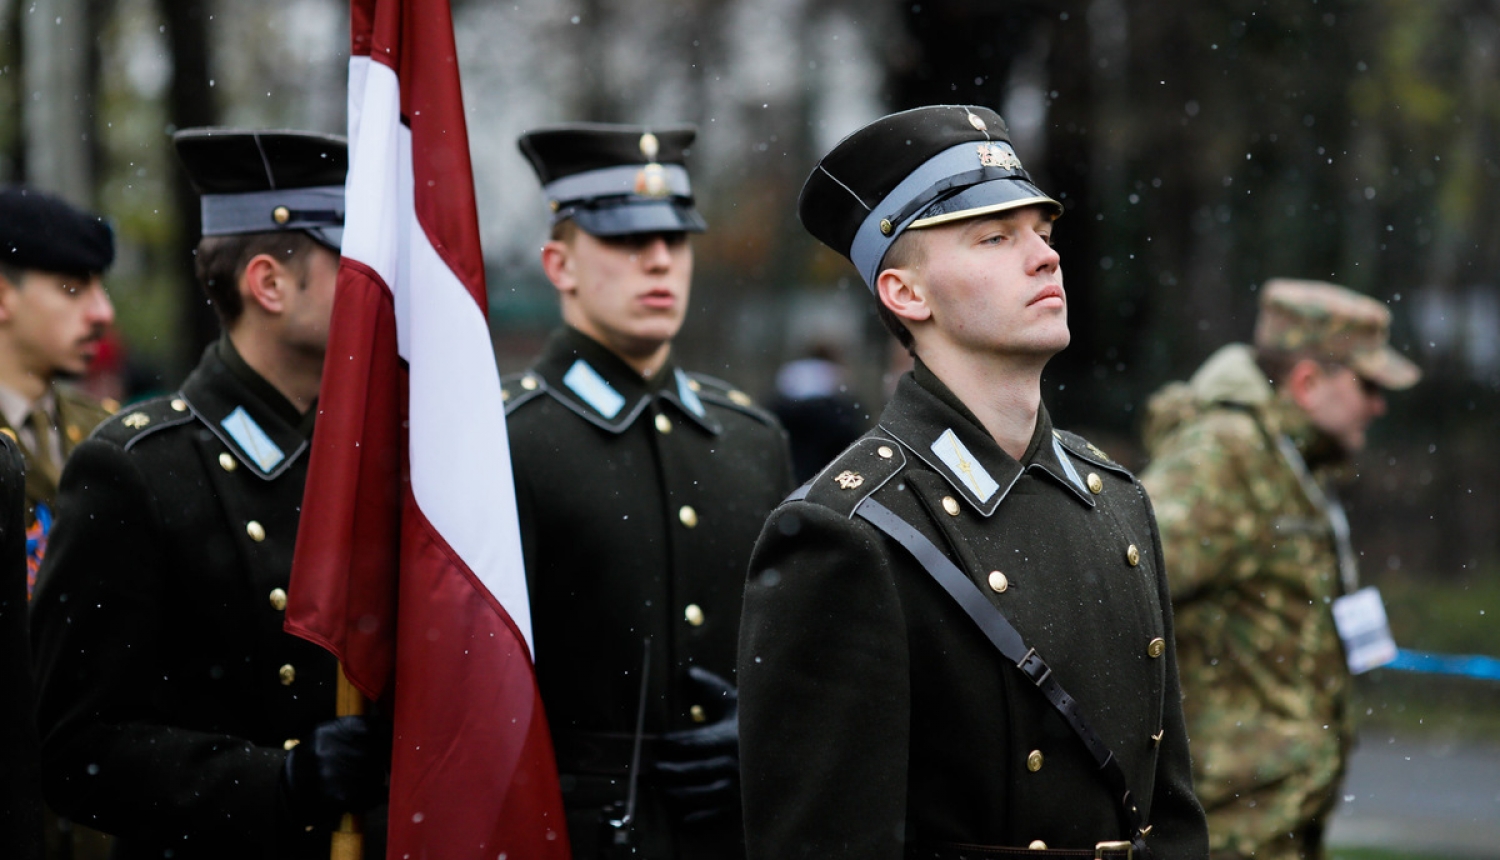 Aizsardzības ministriju pilnvaro slēgt līgumus par Latvijā ražotas munīcijas piegādēm